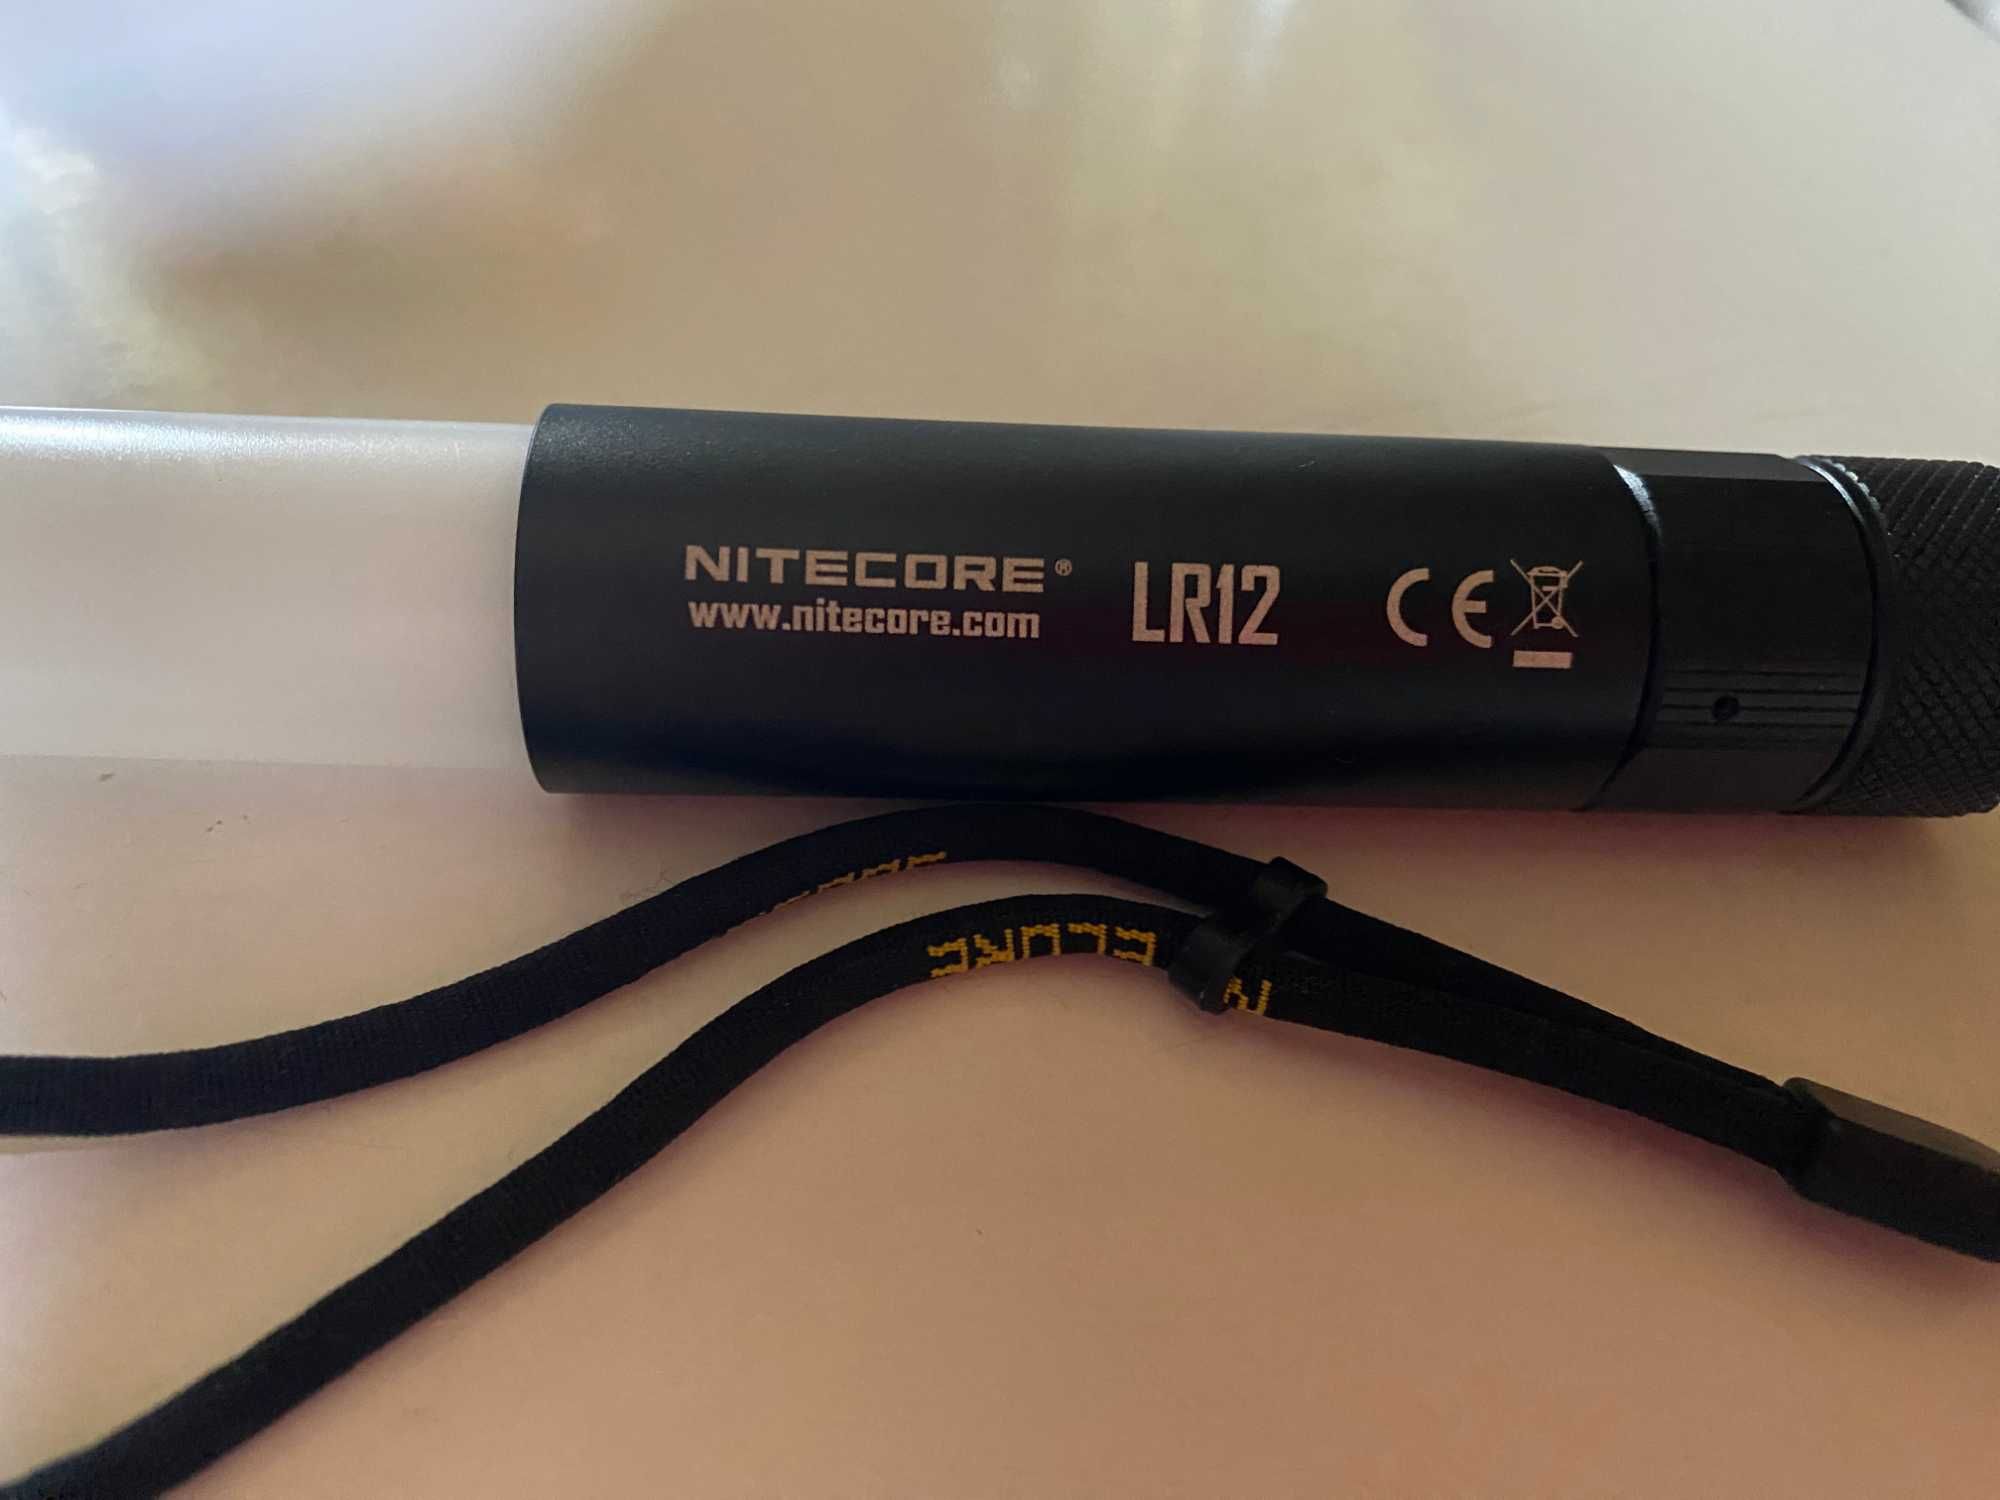 Nitecore LR12 & Nitecore battery 3500 mah 8A